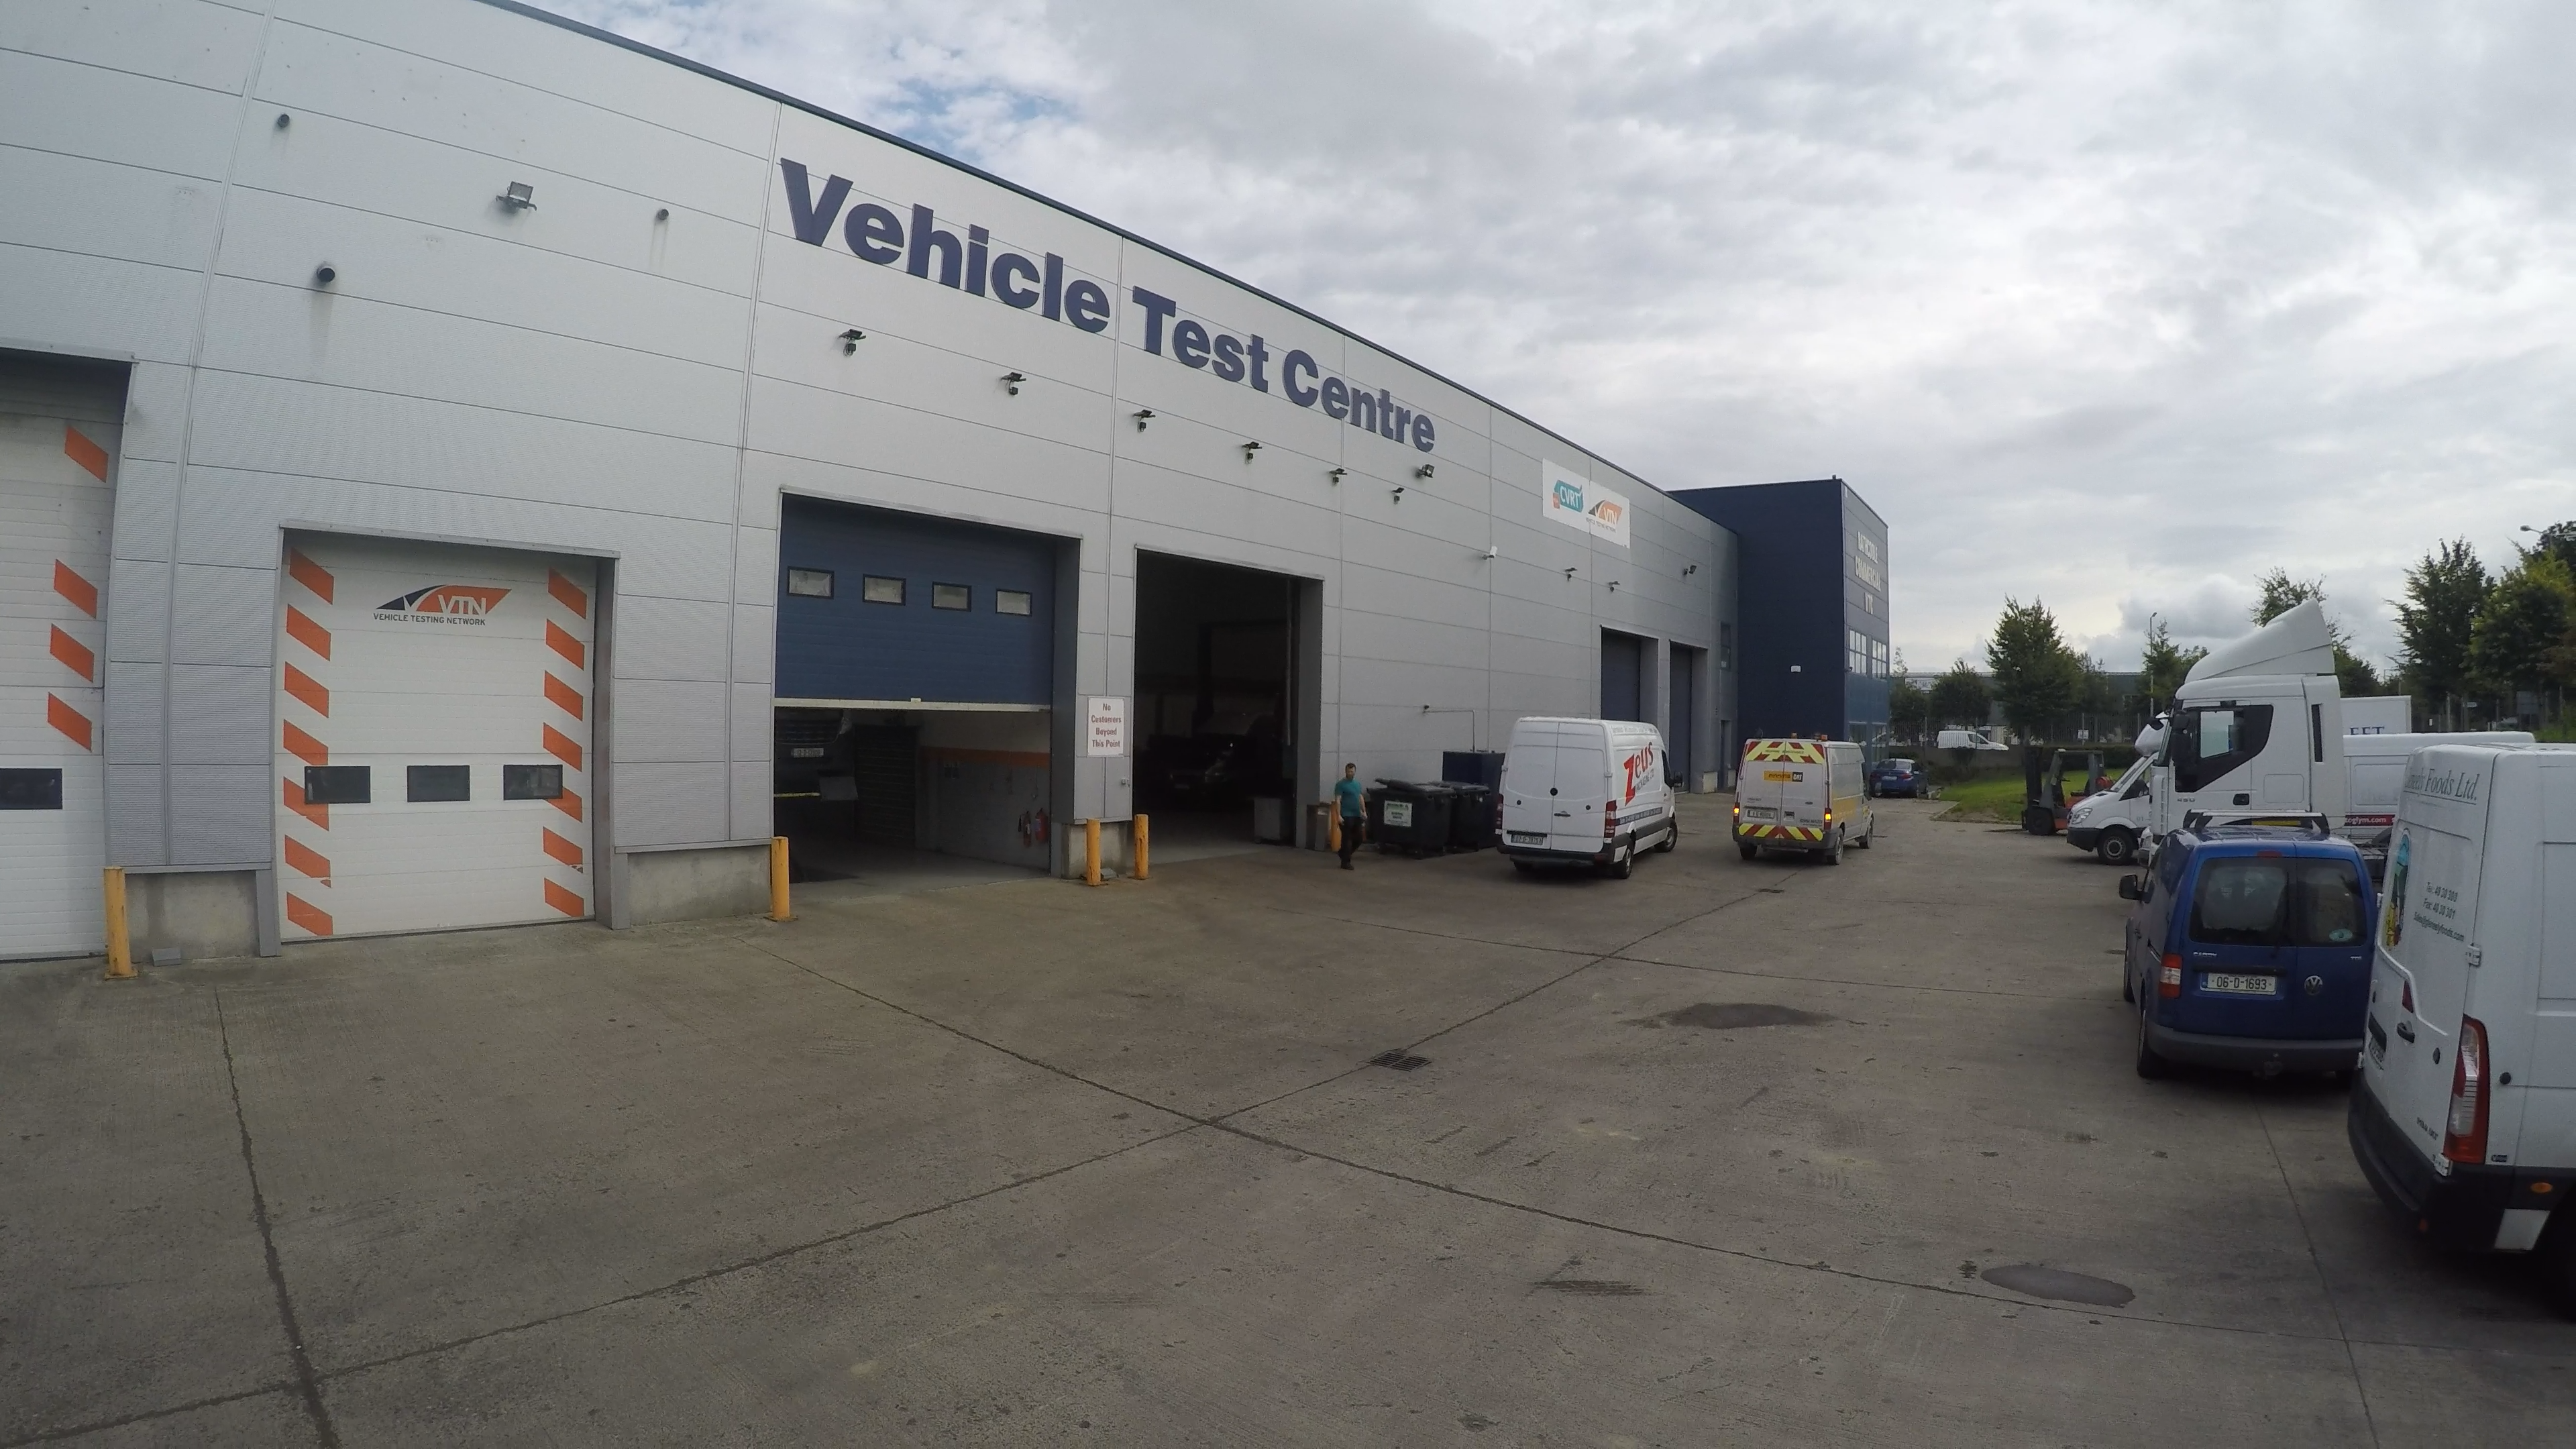 Preparing for your DOE/CVRT test for Commercial Trucks and Vans in Dublin